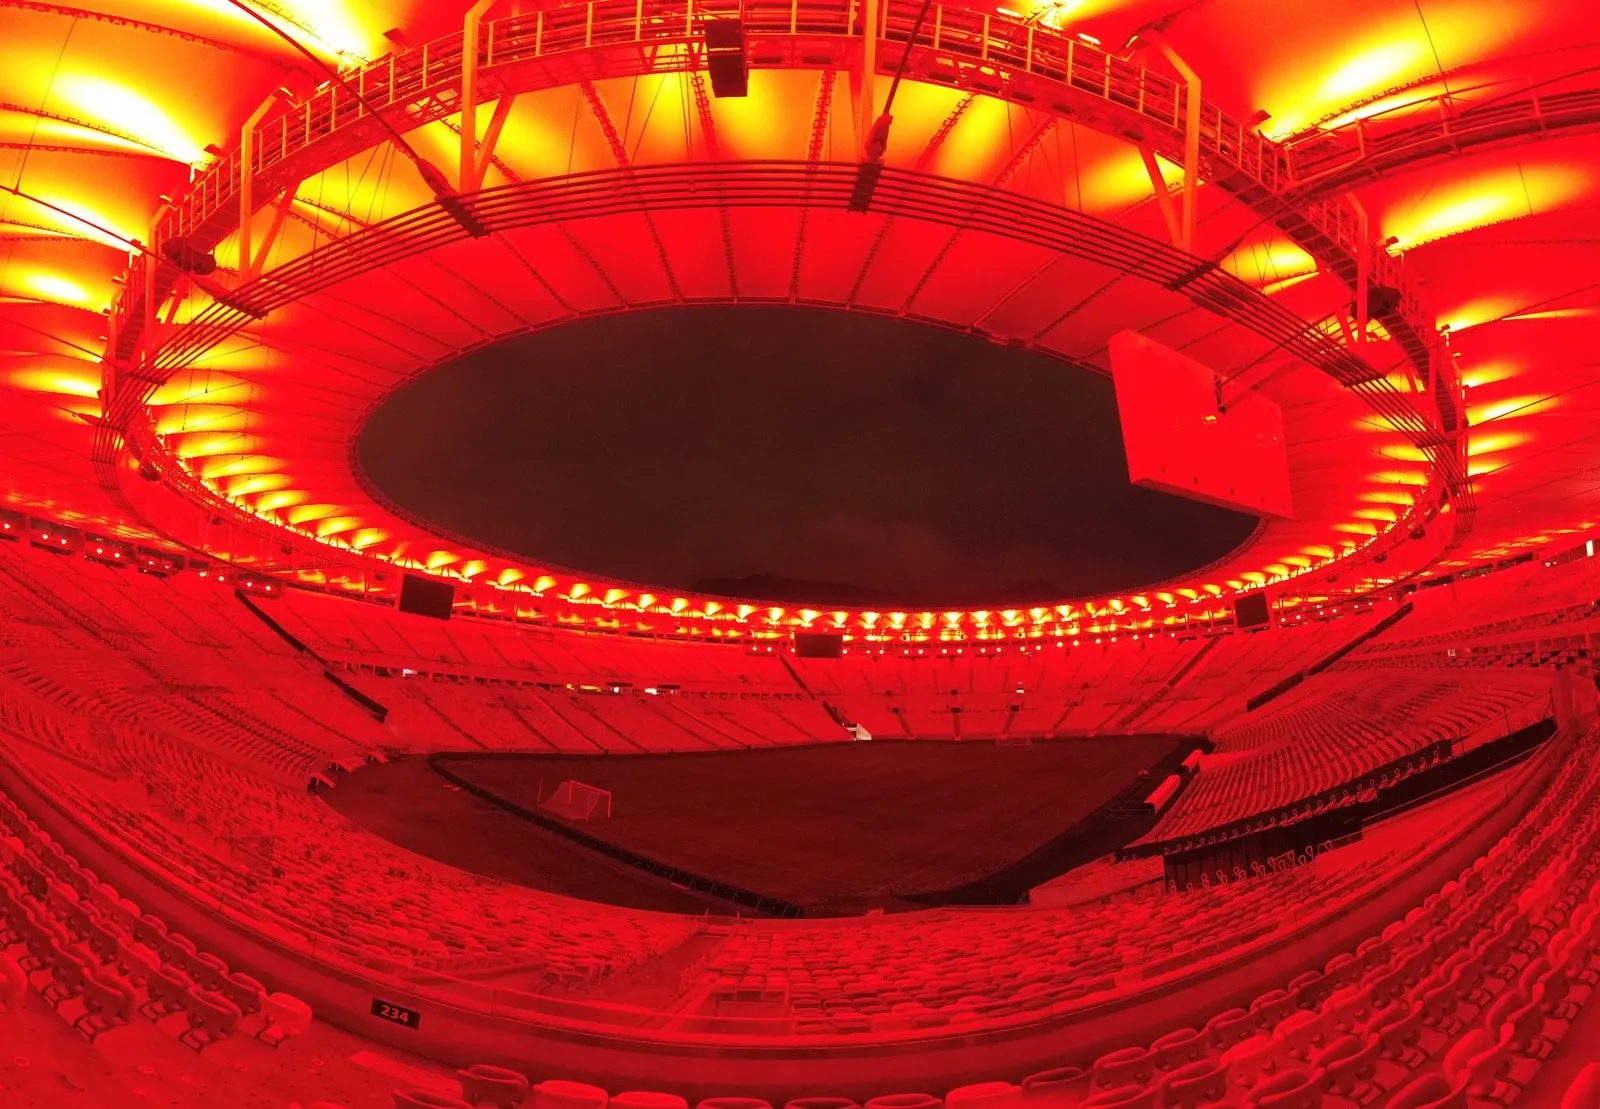 O Maracanã recebeu luzes em um tom de vermelho forte para a semifinal contra o Grêmio na noite desta quarta-feira (23).